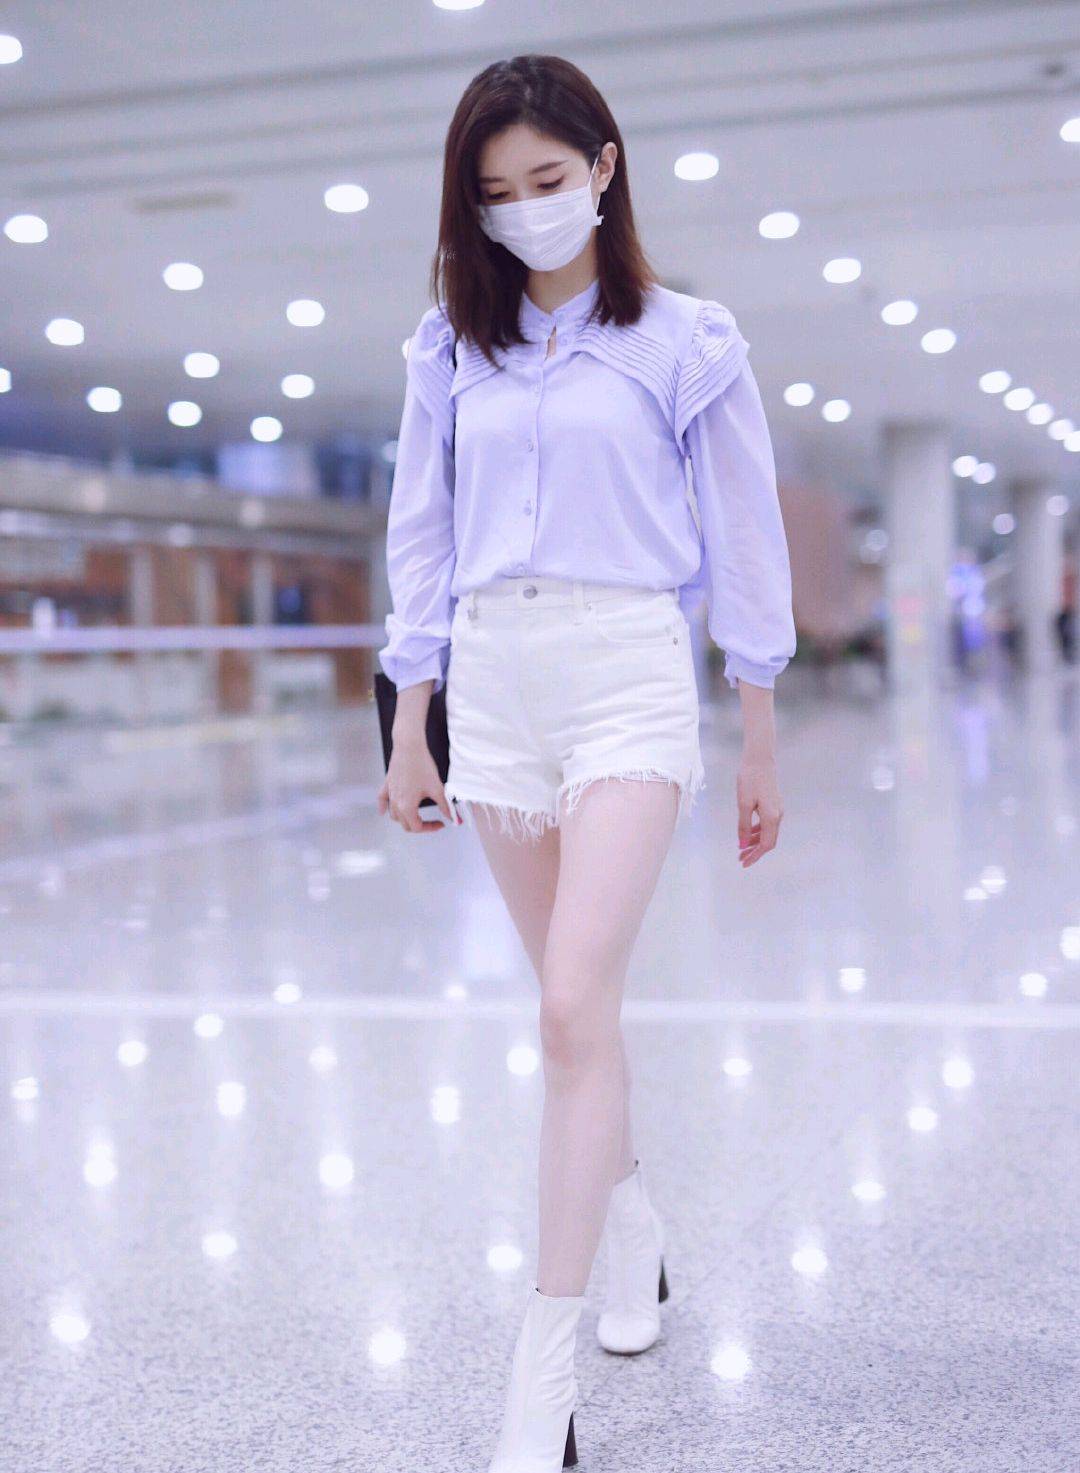 原创江疏影好精致,身穿淡紫色衬衫搭配白色热裤走机场,简约又时髦